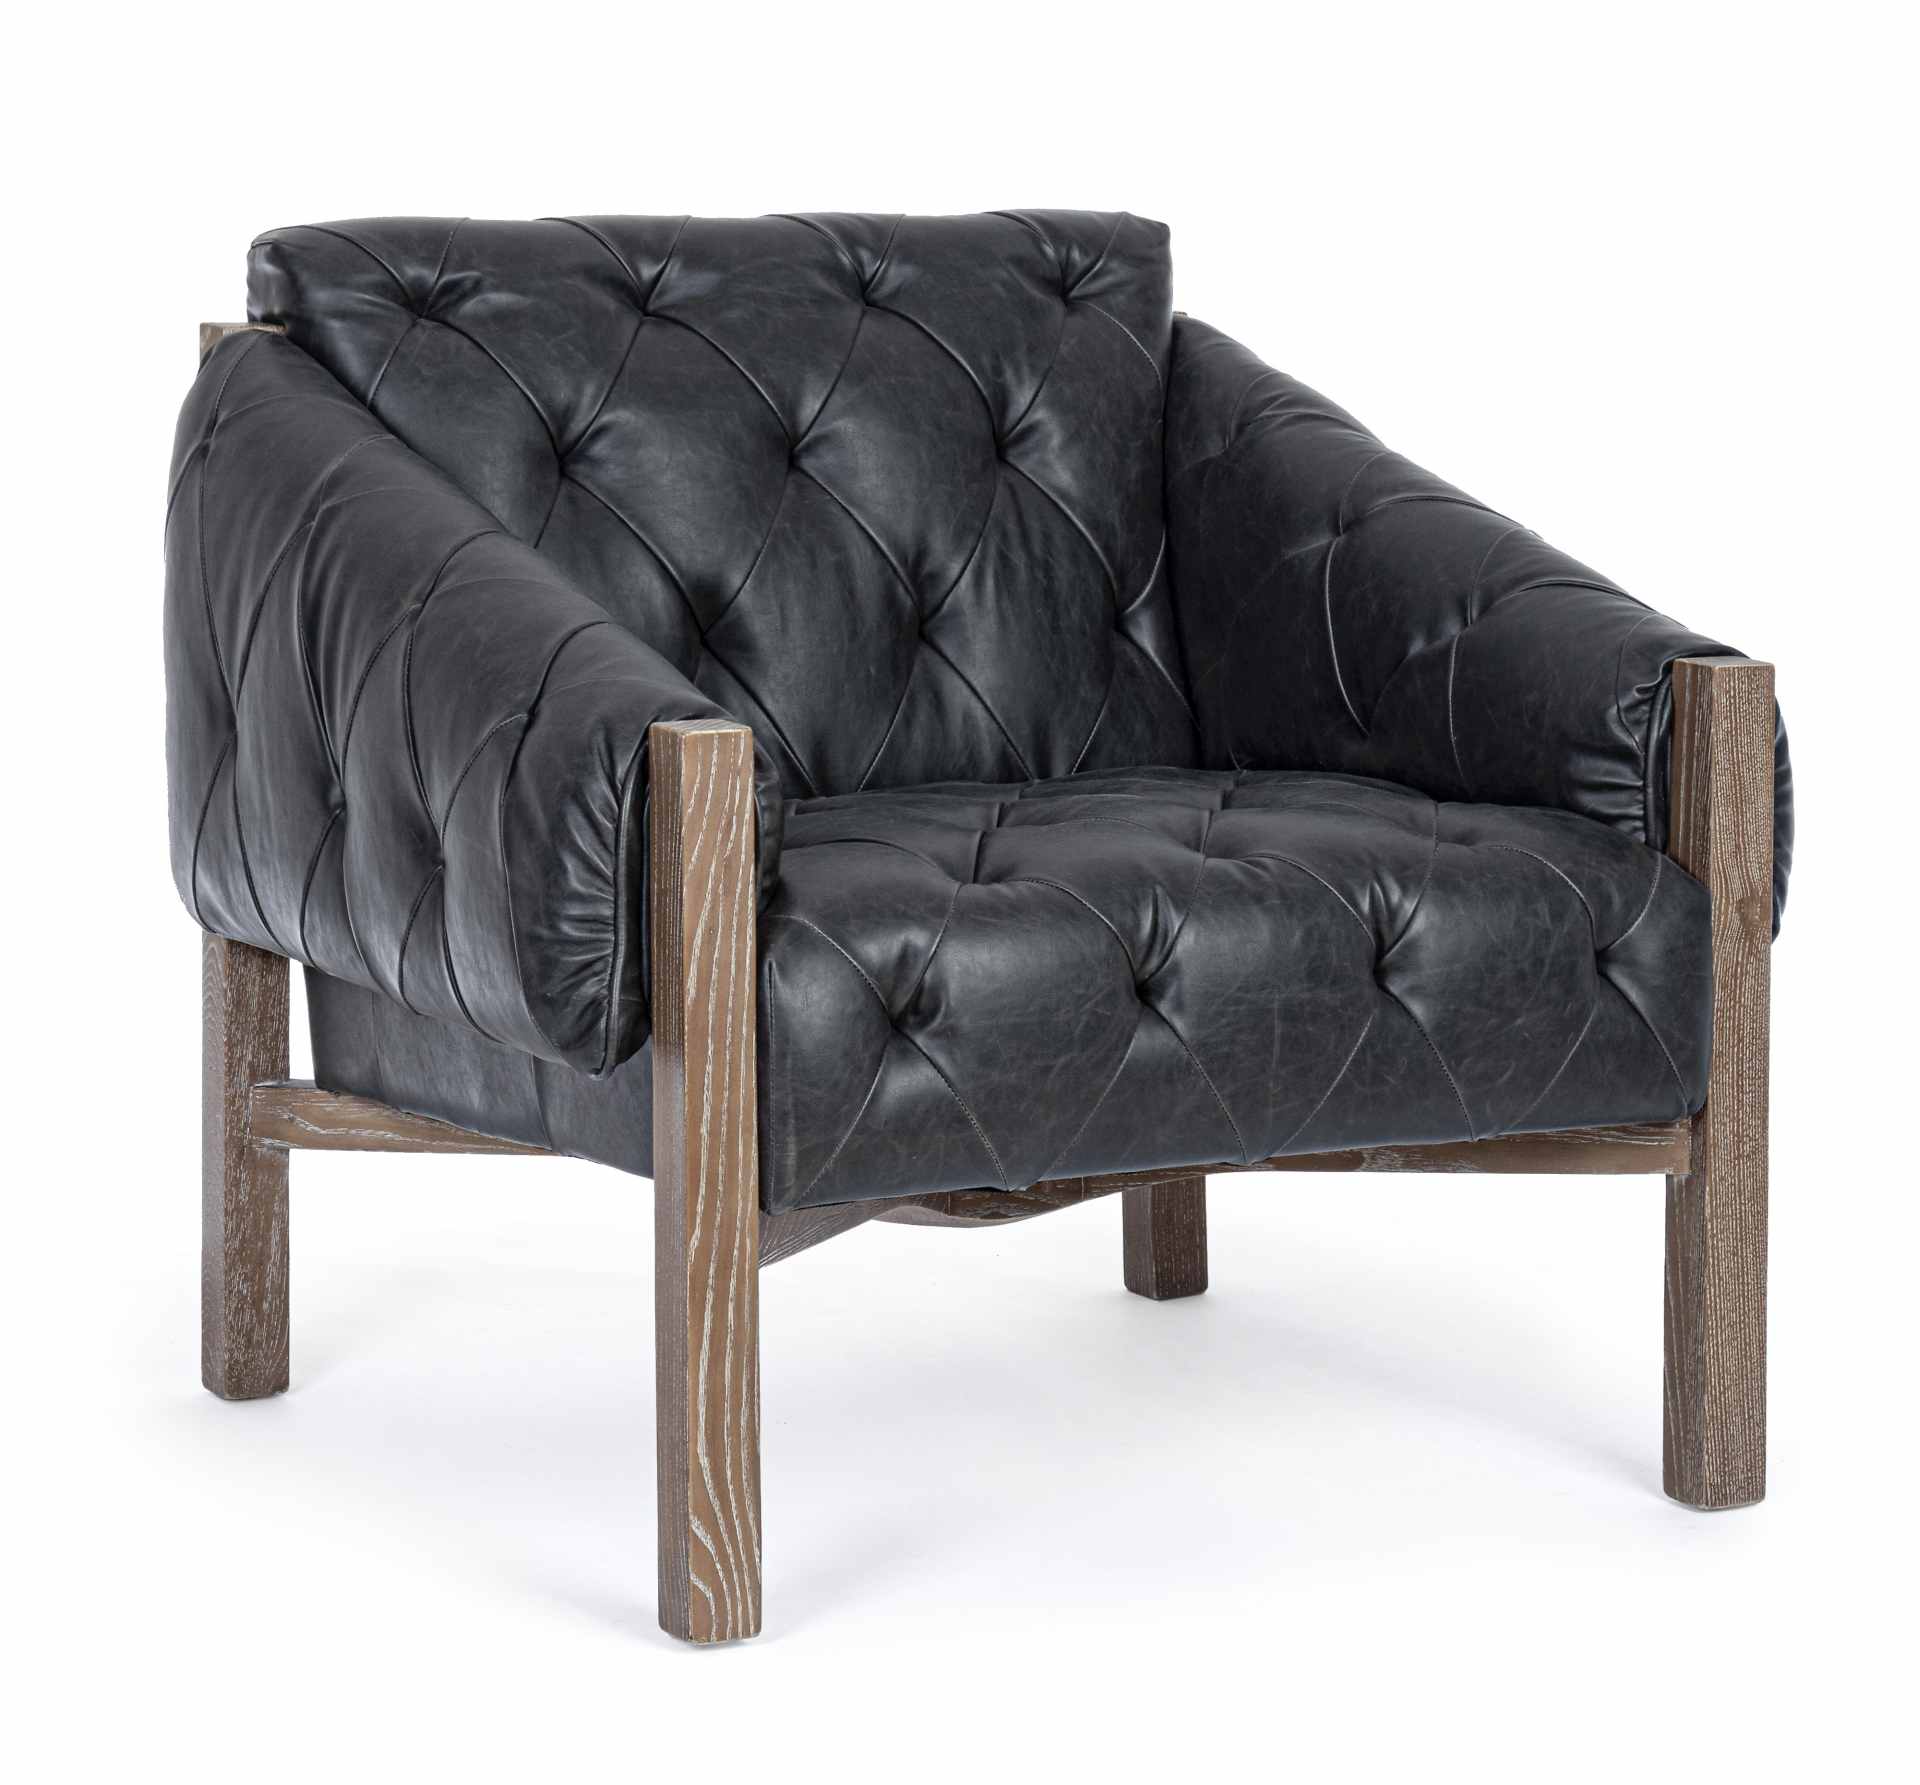 Der Sessel Harrison überzeugt mit seinem klassischen Design. Gefertigt wurde er aus Kunstleder, welches einen schwarzen Farbton besitzt. Das Gestell ist aus Eschenholz und hat eine natürliche Farbe. Der Sessel besitzt eine Sitzhöhe von 45 cm. Die Breite b